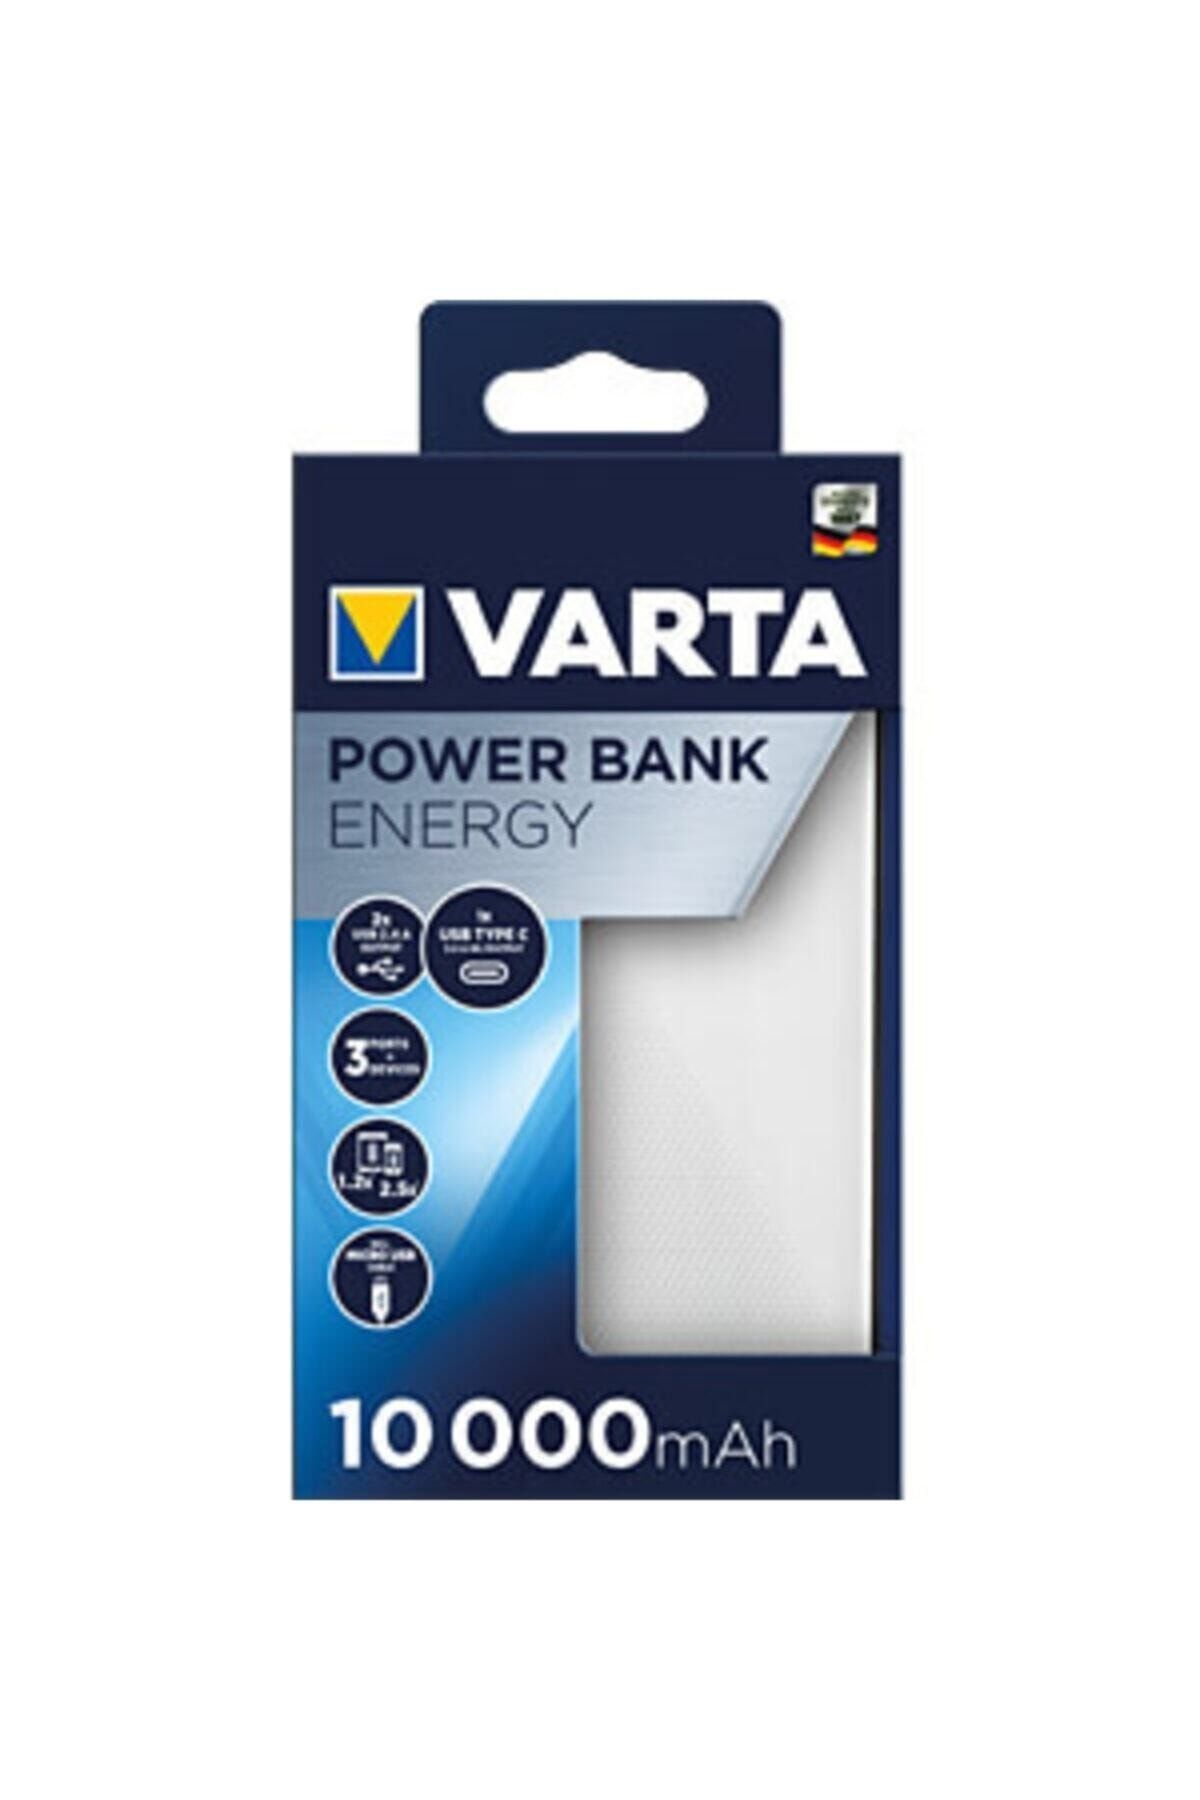 Varta Energy 10000 Mah Power Bank